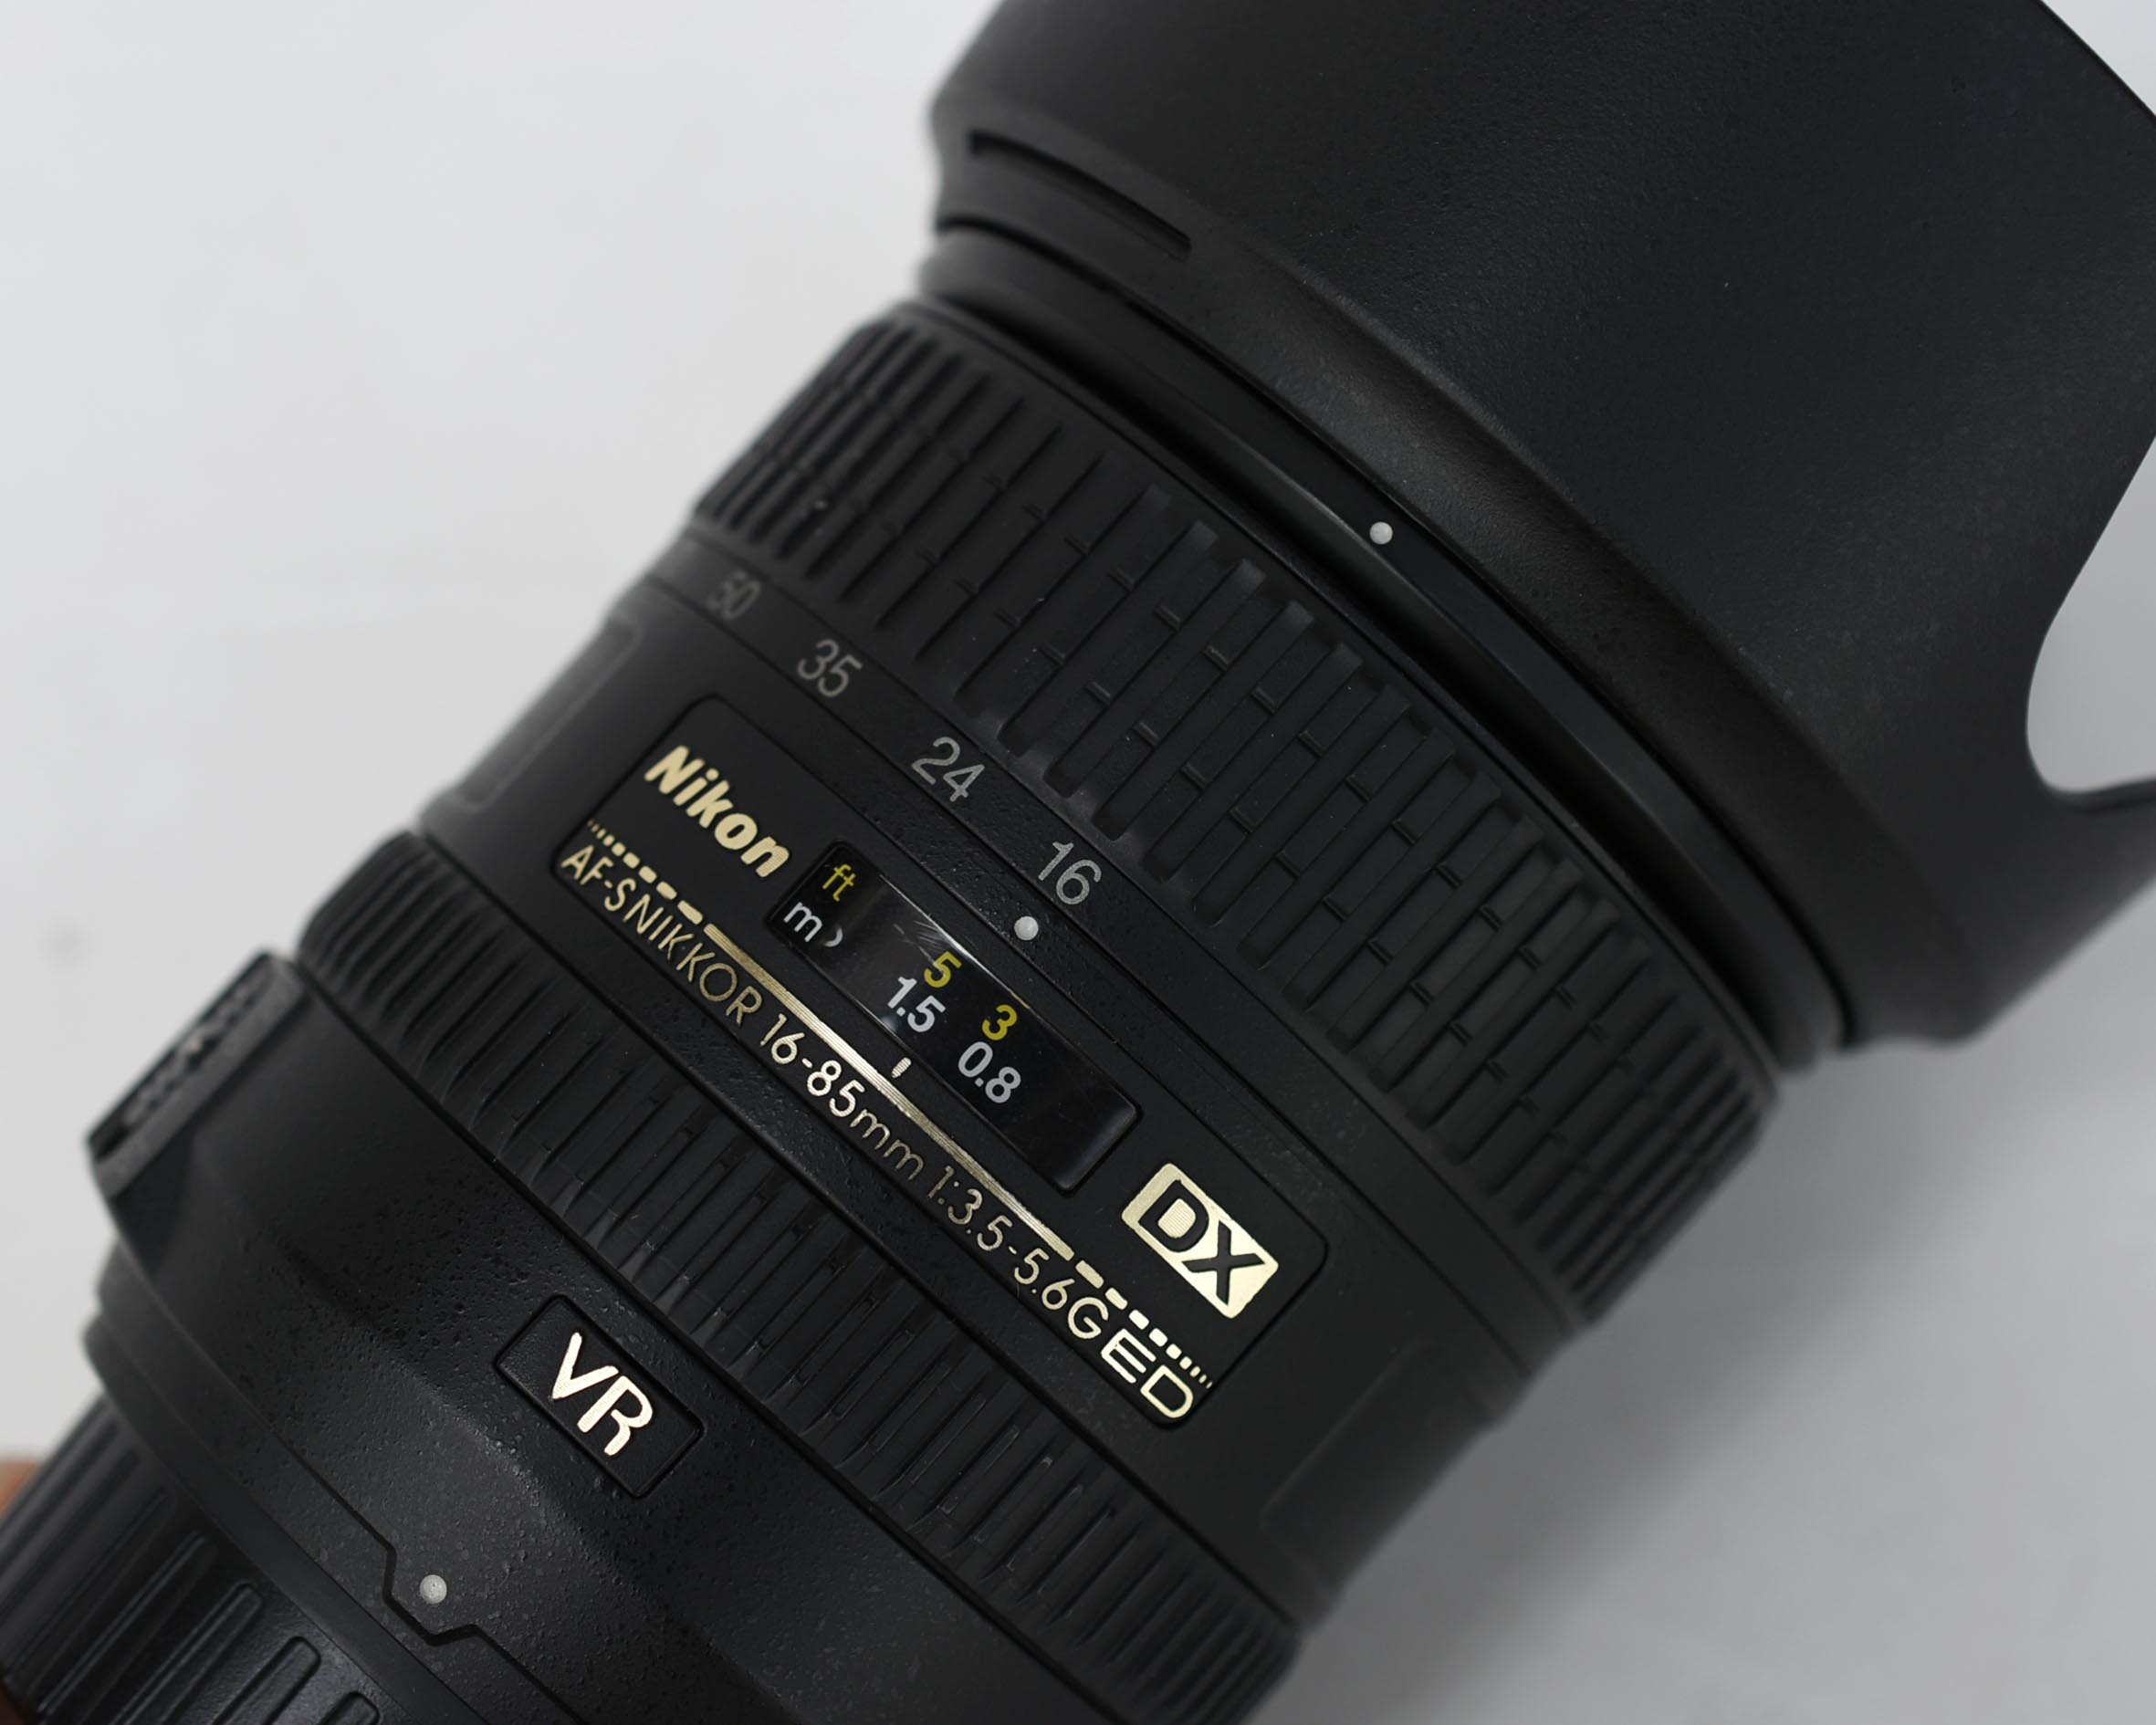 Ống Kính Nikon AF-S 16-85mm f/3.5-5.6G ED VR